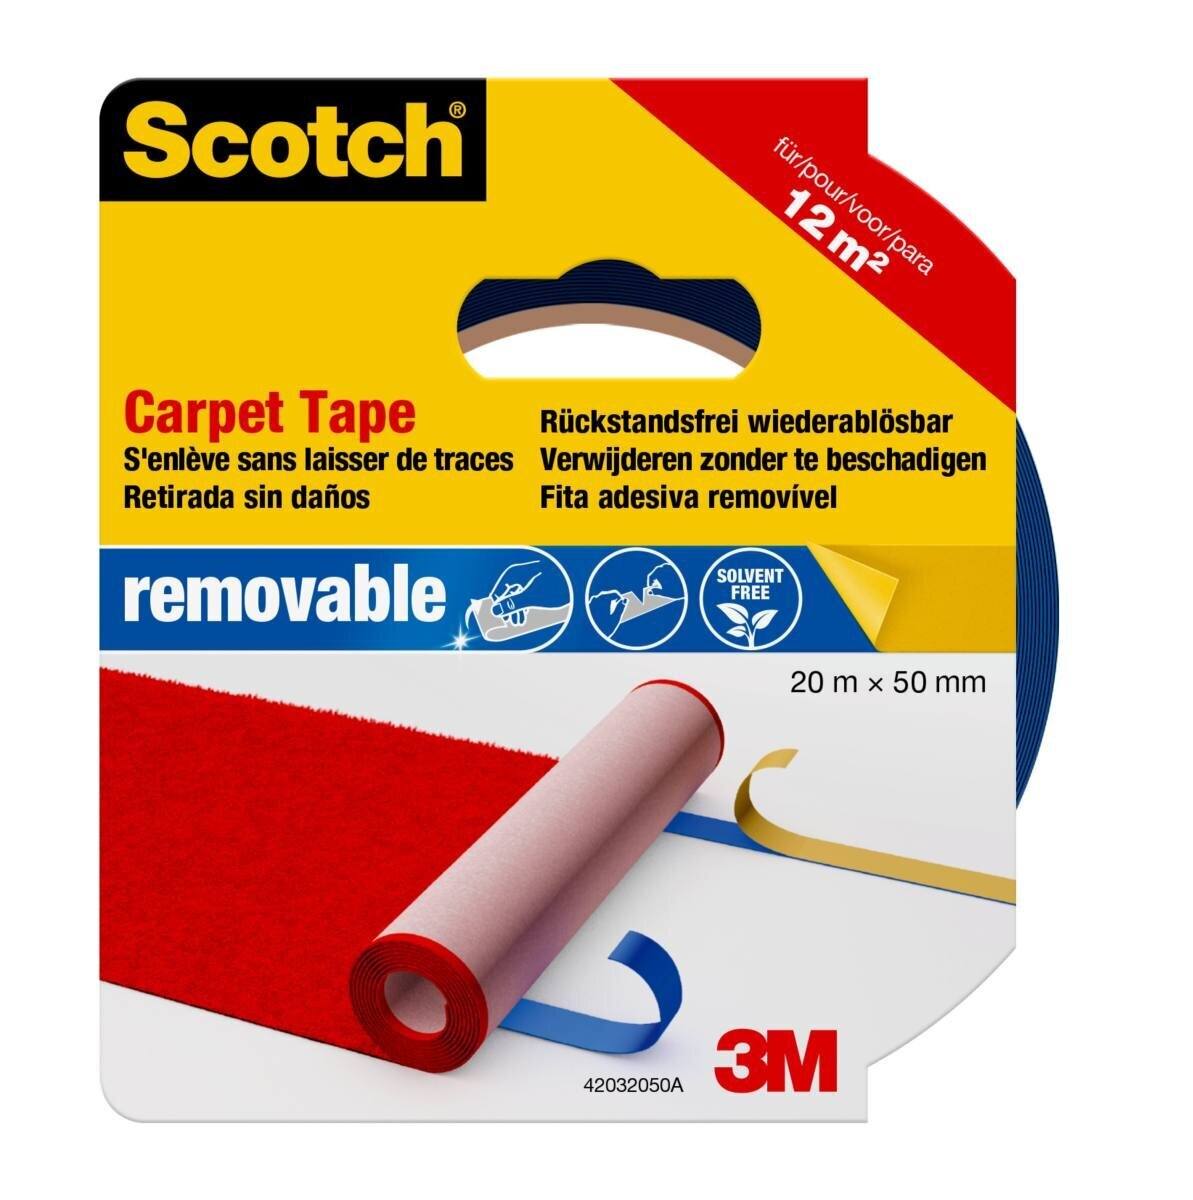 3M Scotch carpet tape 42032050, 50 mm x 20 m, blue